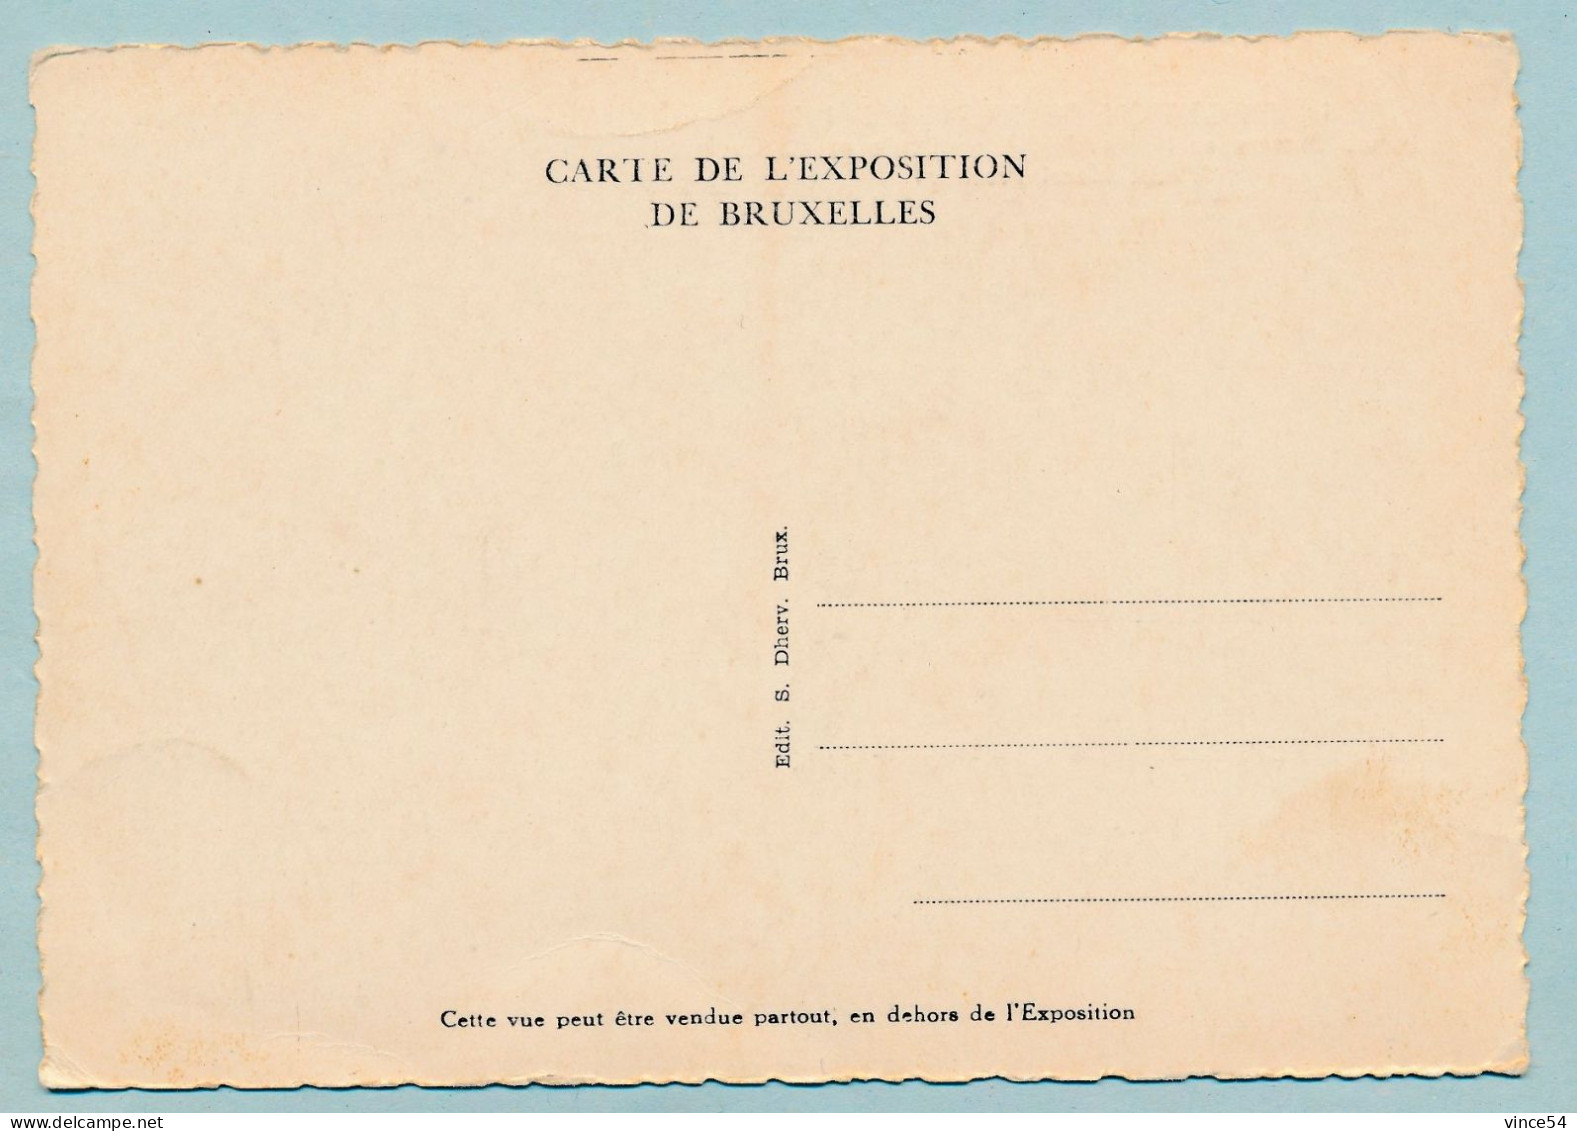 Exposition De BRUXELLES 1935 - Grands Bassins Et Palais De L'Automobile Et Du Cycle - Expositions